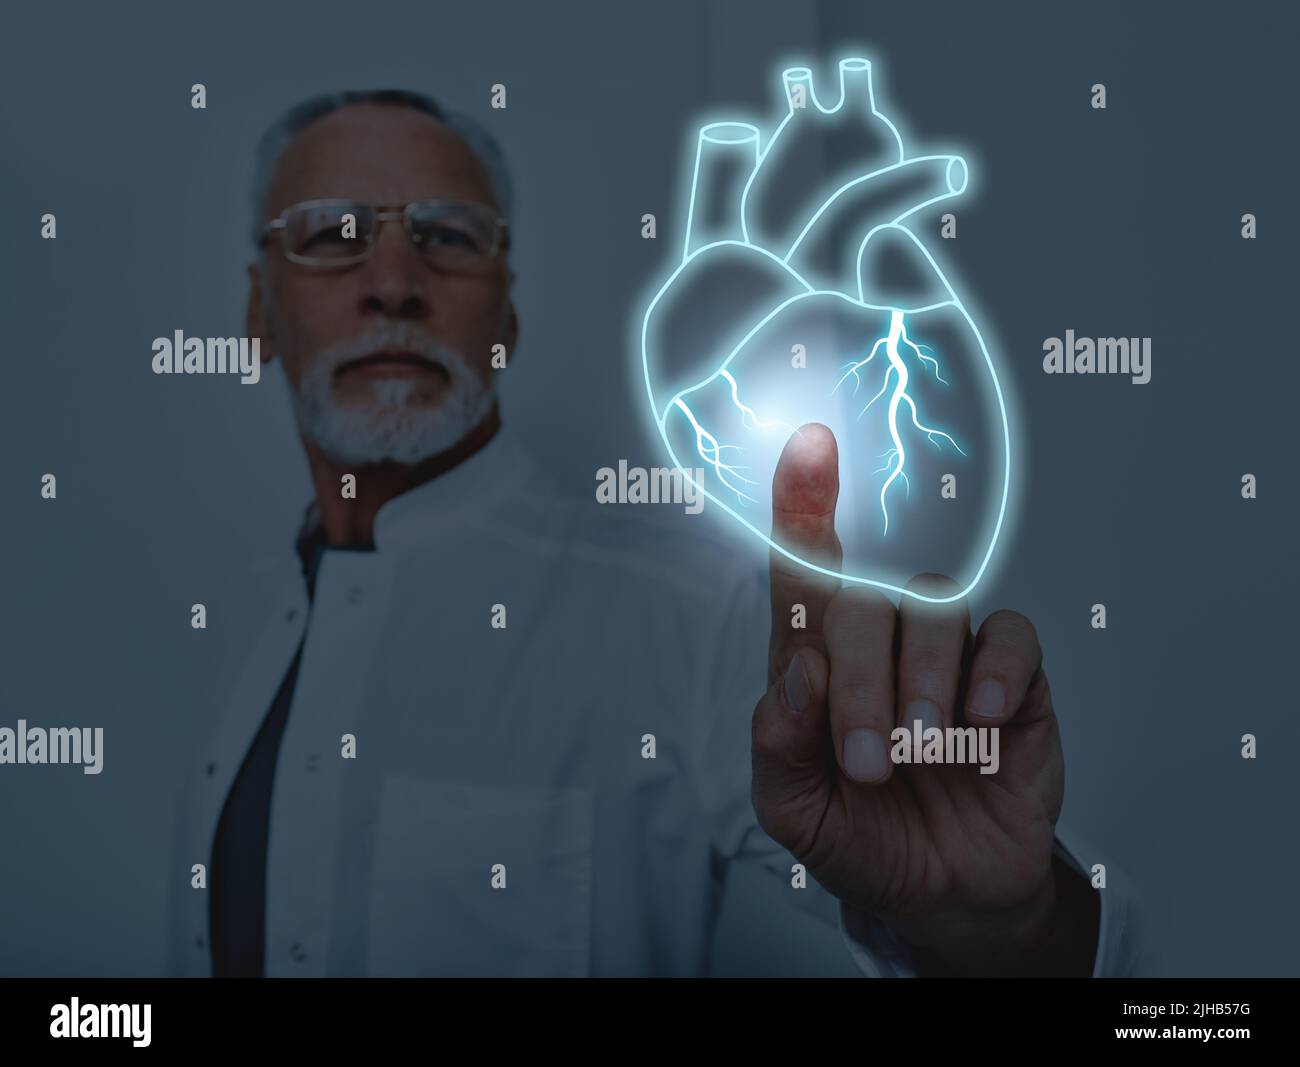 docteur touchant l'hologramme virtuel du coeur humain. Concept de santé cardiaque Banque D'Images